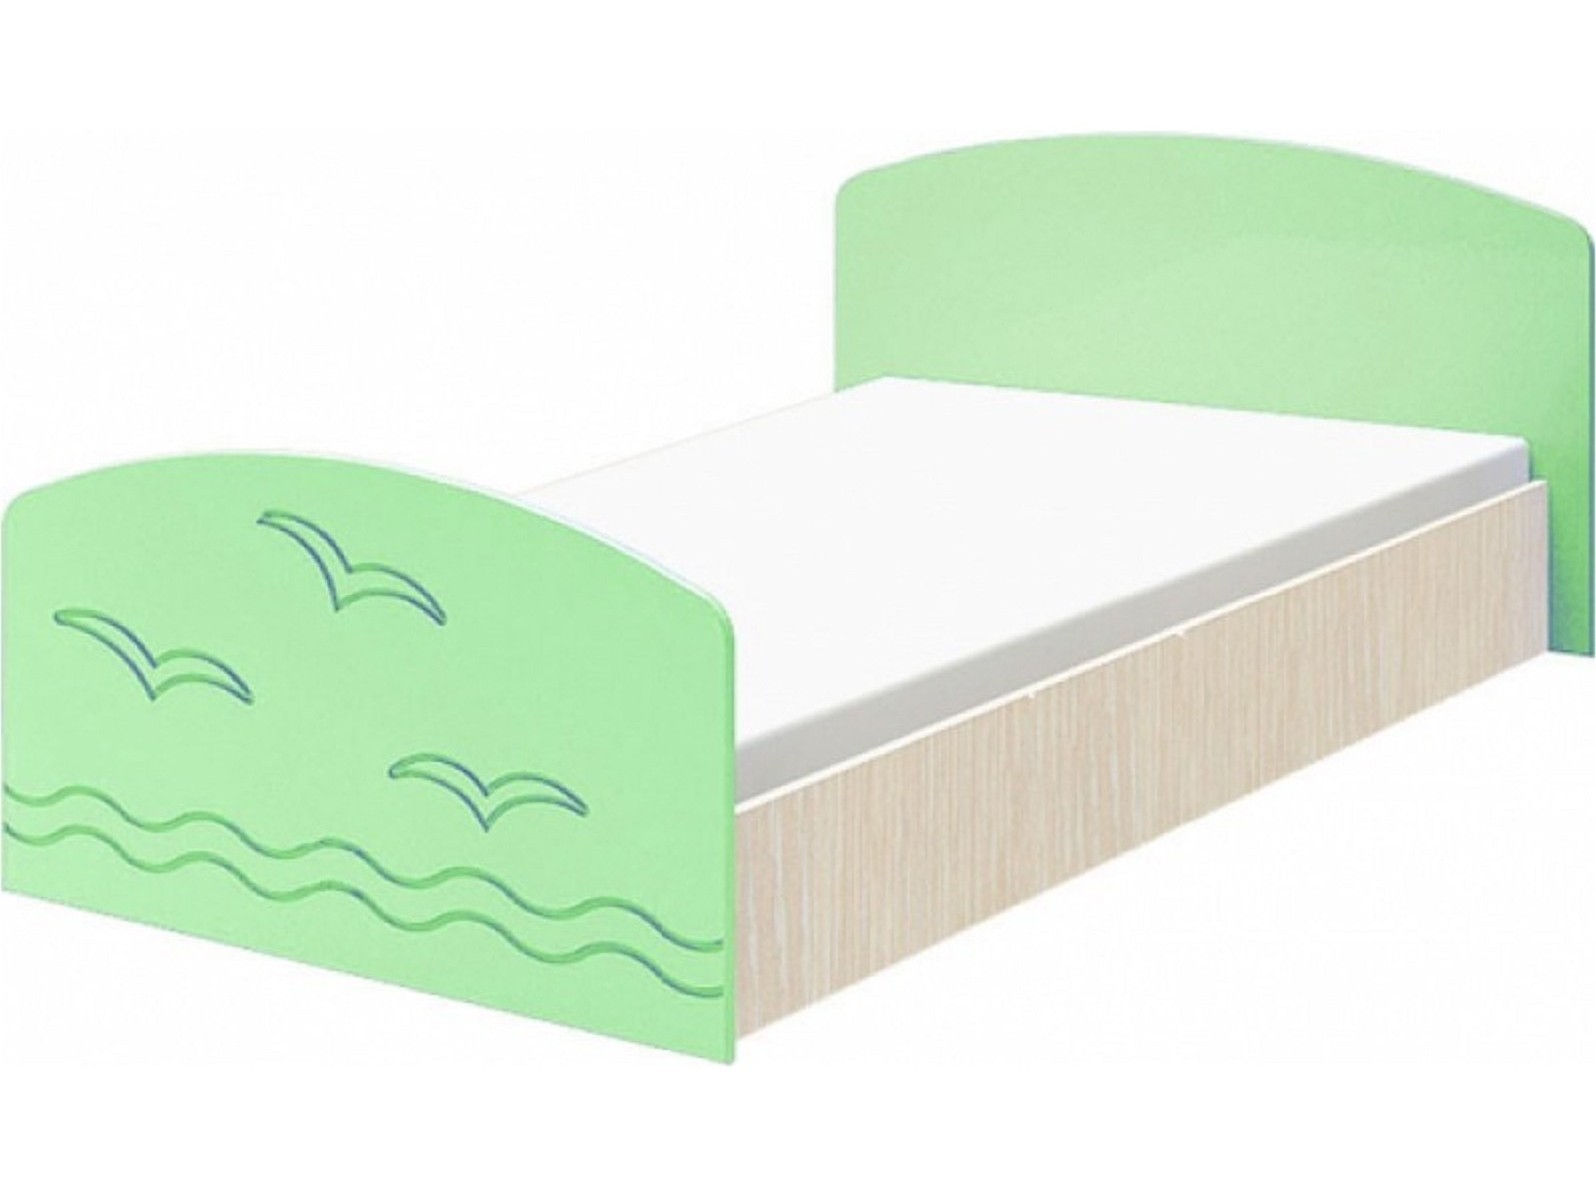 Юниор-2 Детская кровать 80, матовый (Салатовый, Дуб белёный) Зеленый, МДФ, ЛДСП юниор 2 детская кровать 80 матовый синий дуб белёный синий мдф лдсп